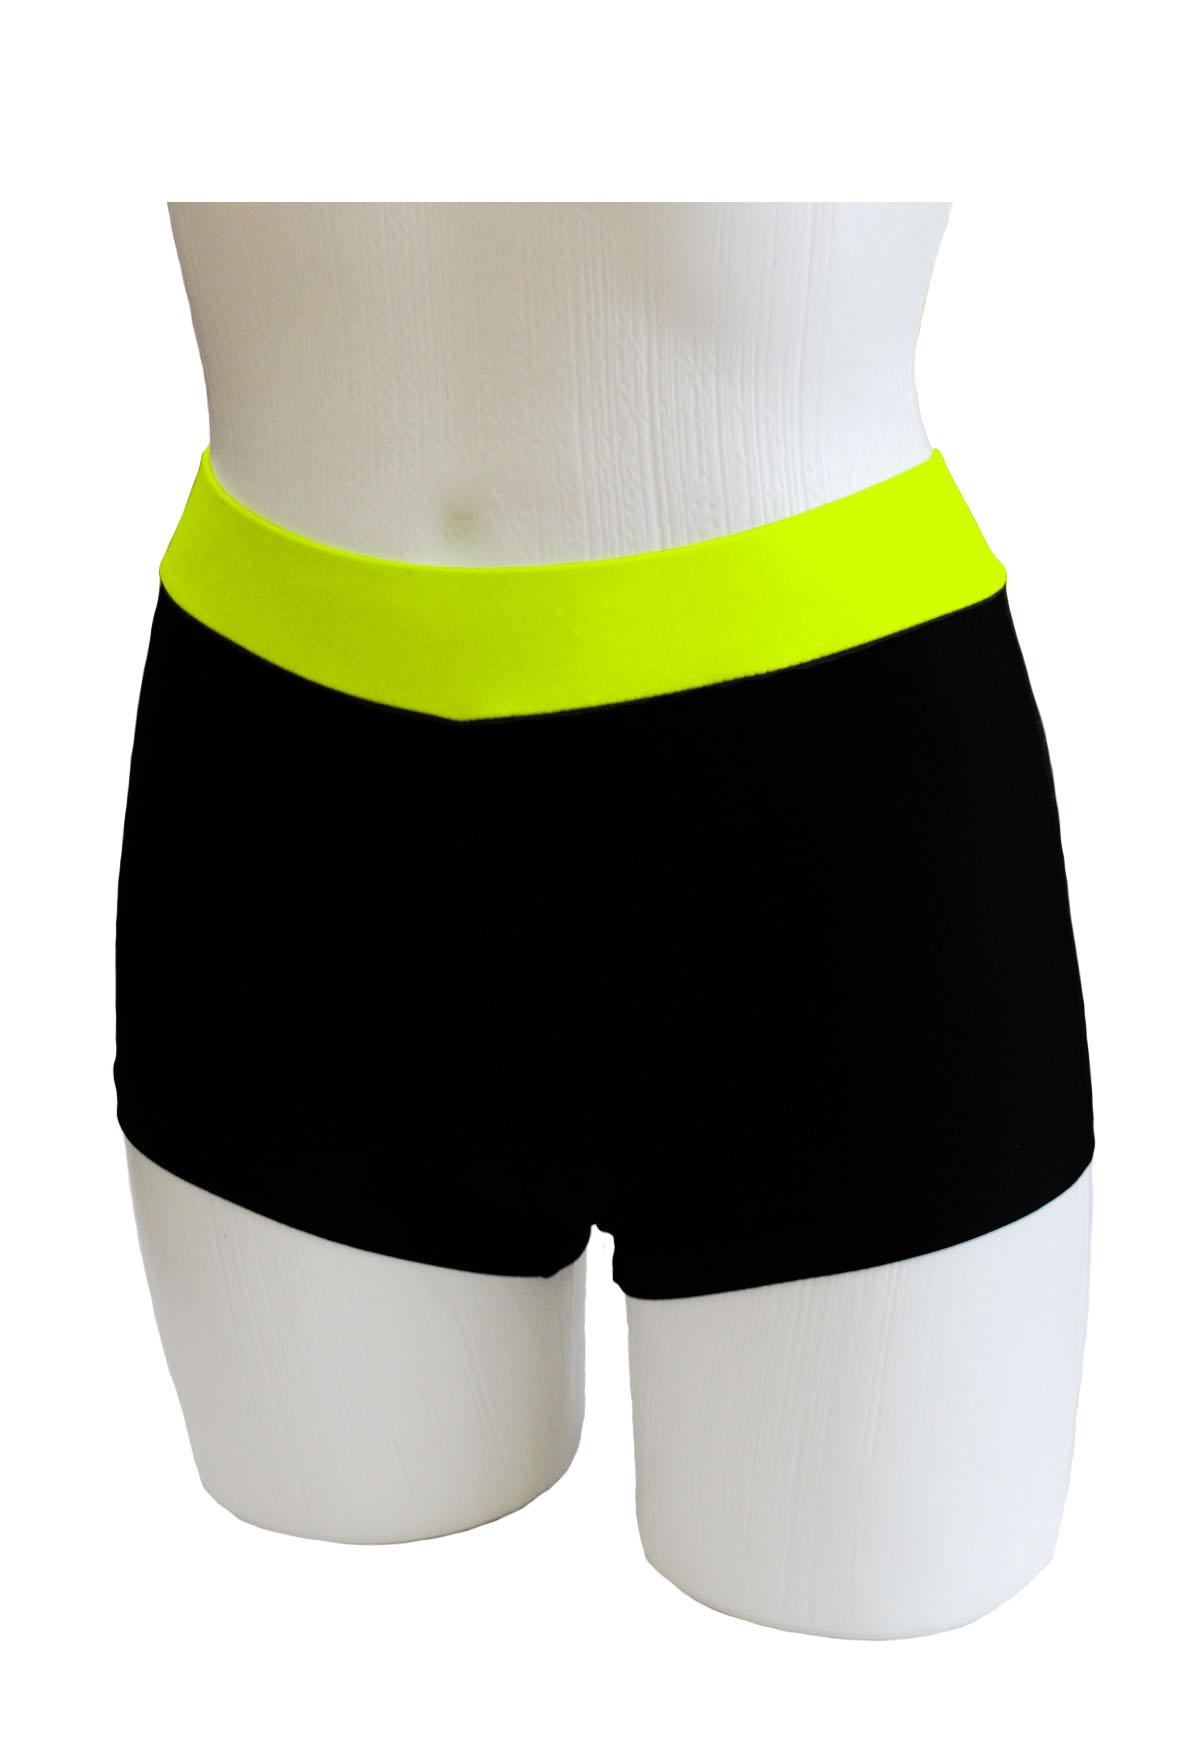 Шорты женские для спортивной гимнастики GK Sport 6250 черные с желтым поясом